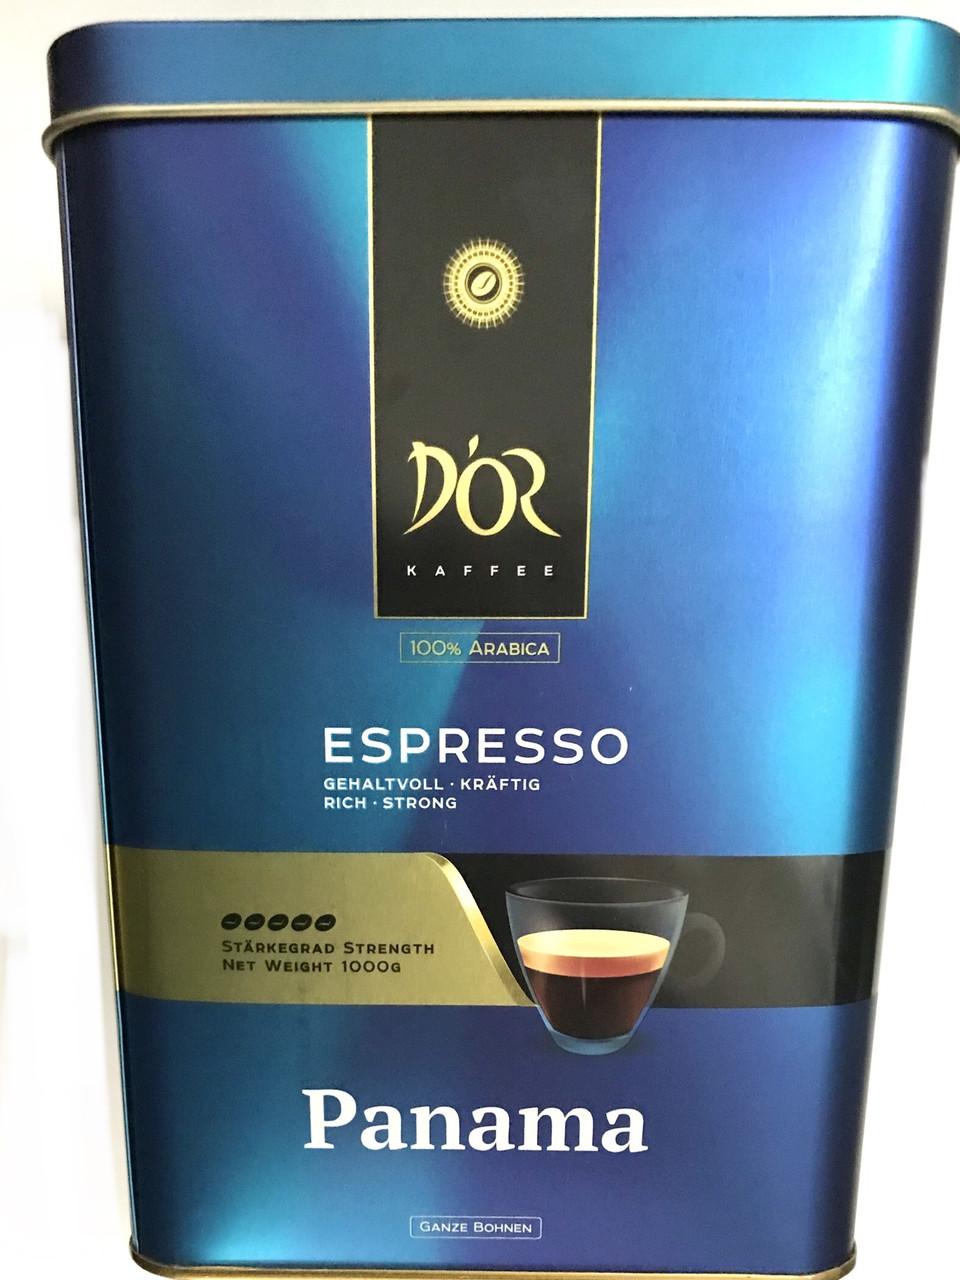 D'or Kaffee Espresso PANAMA 1 кг кави в зернах у залізній банці 6 шт.